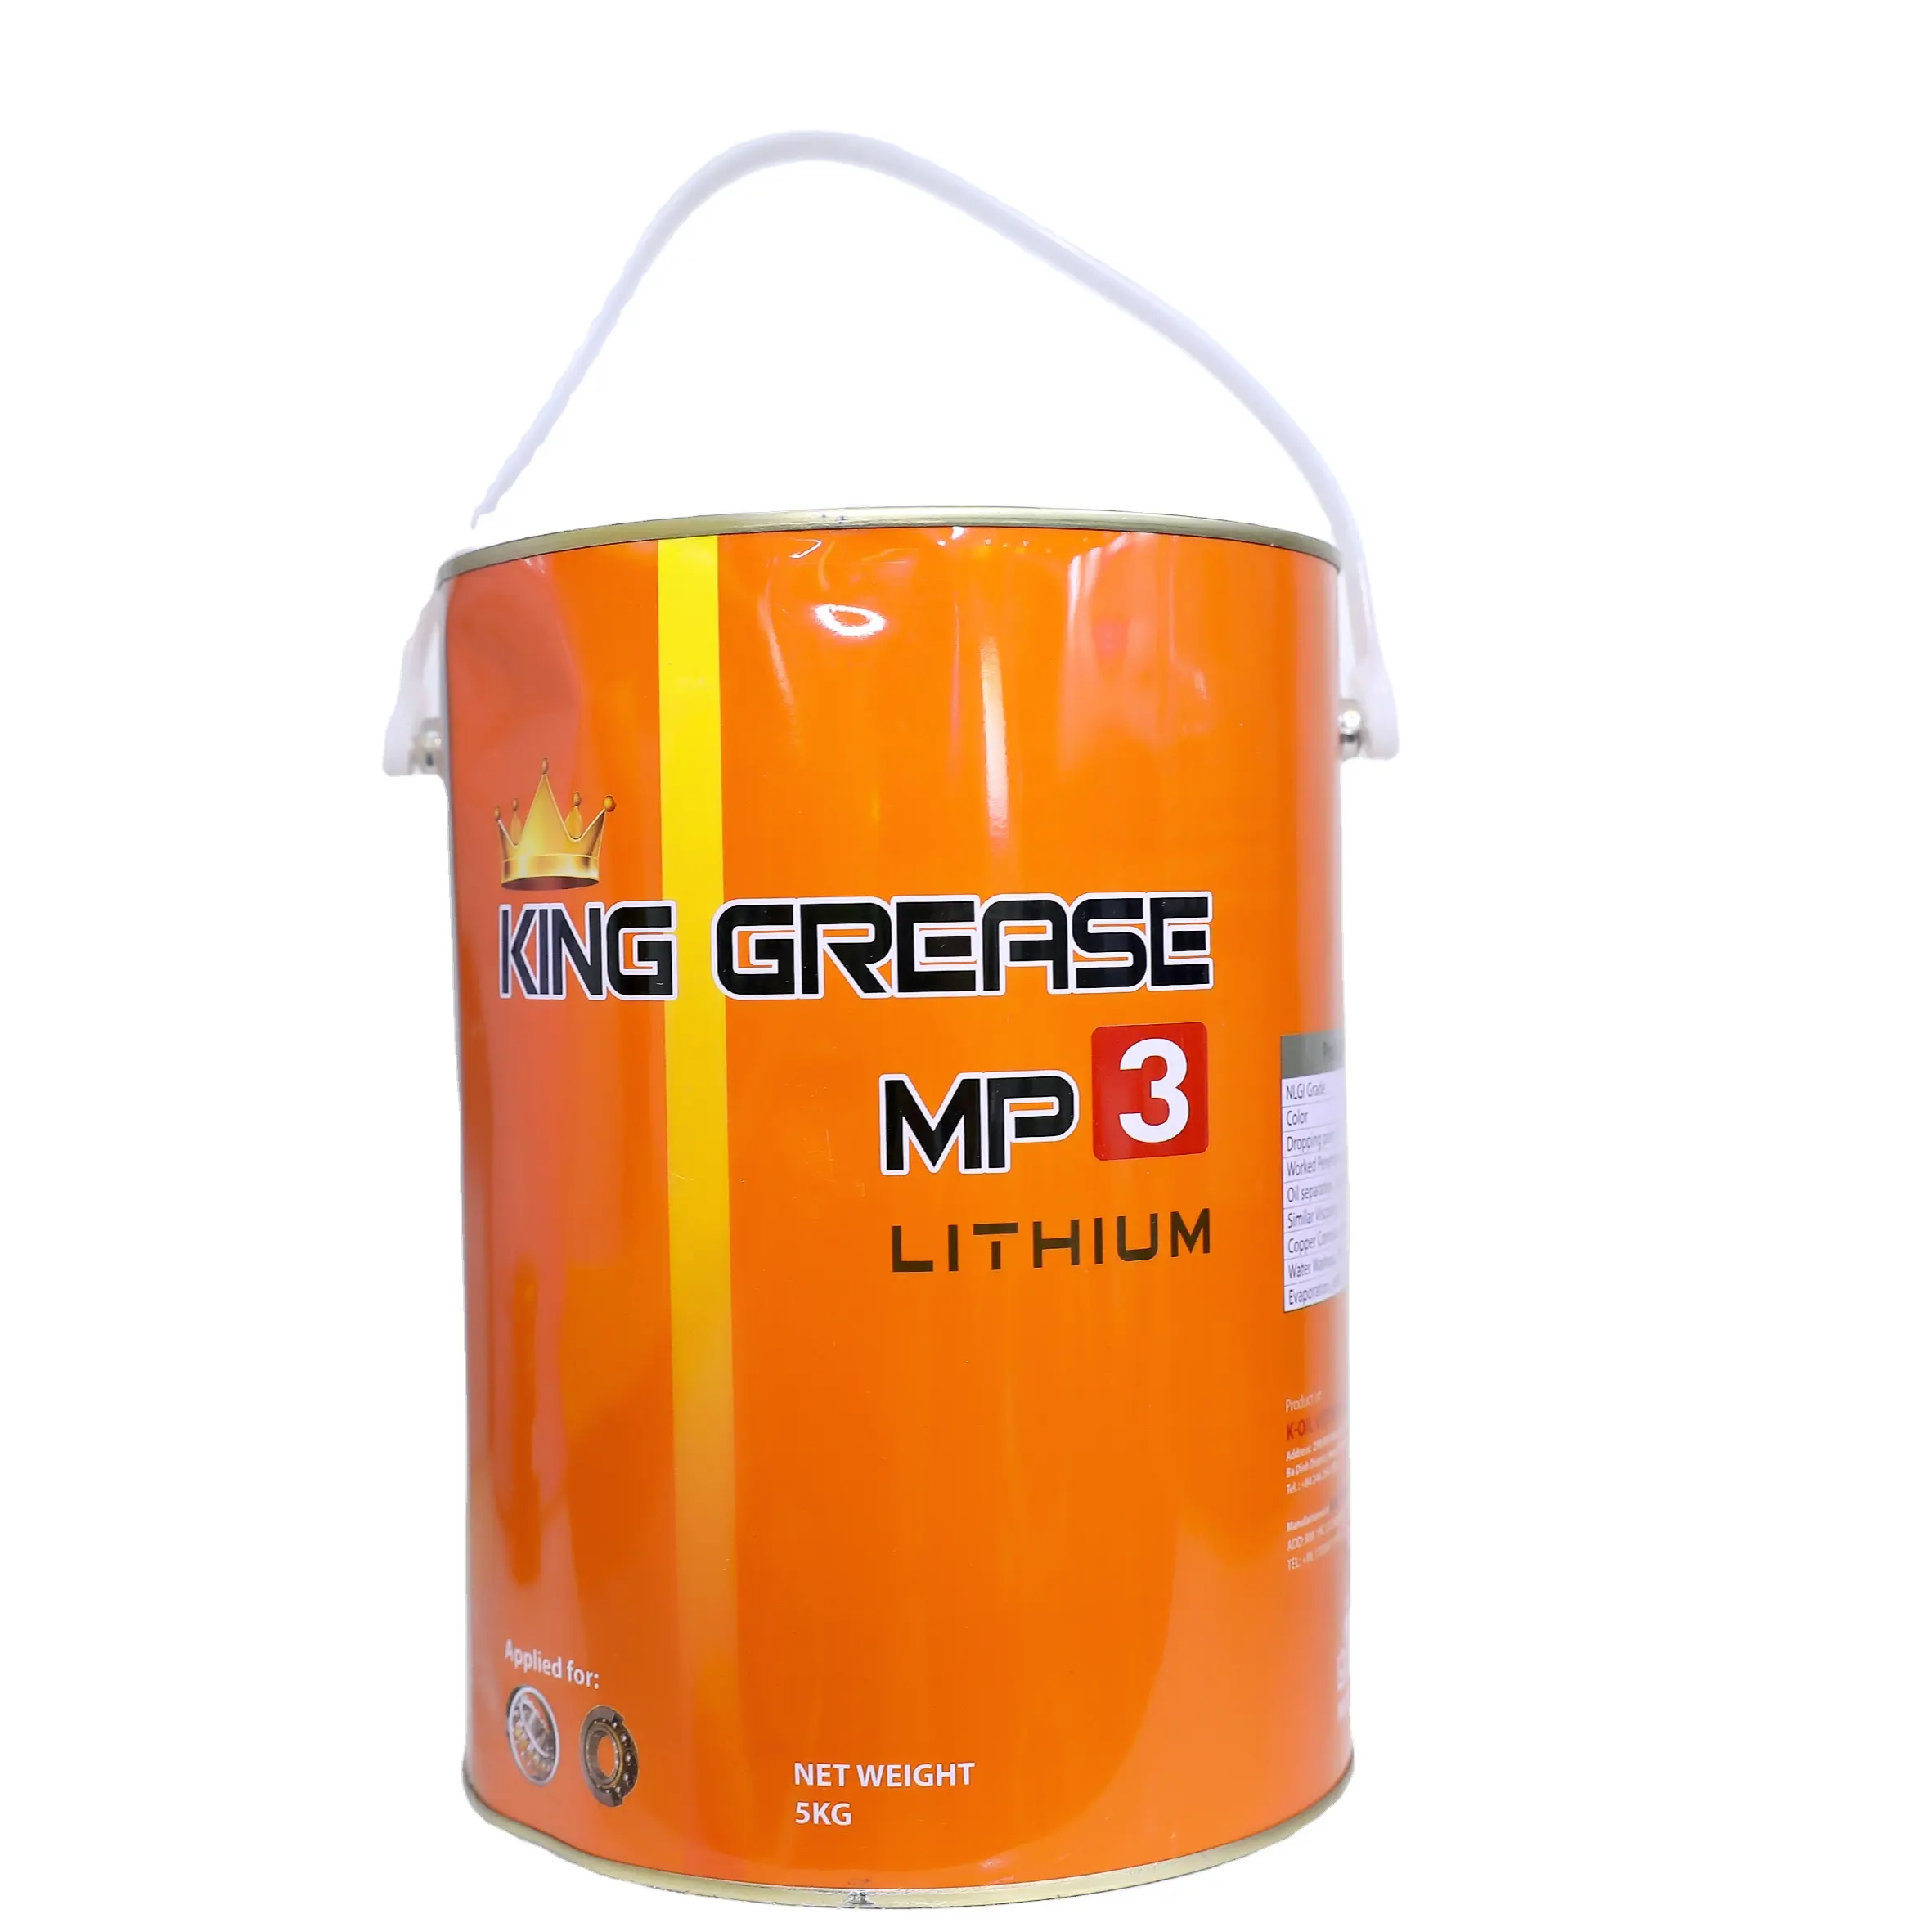 REI GREASE MP3 Lithium Vietnam, longa vida útil e baixo preço para aplicações industriais. Graxa lubrificante